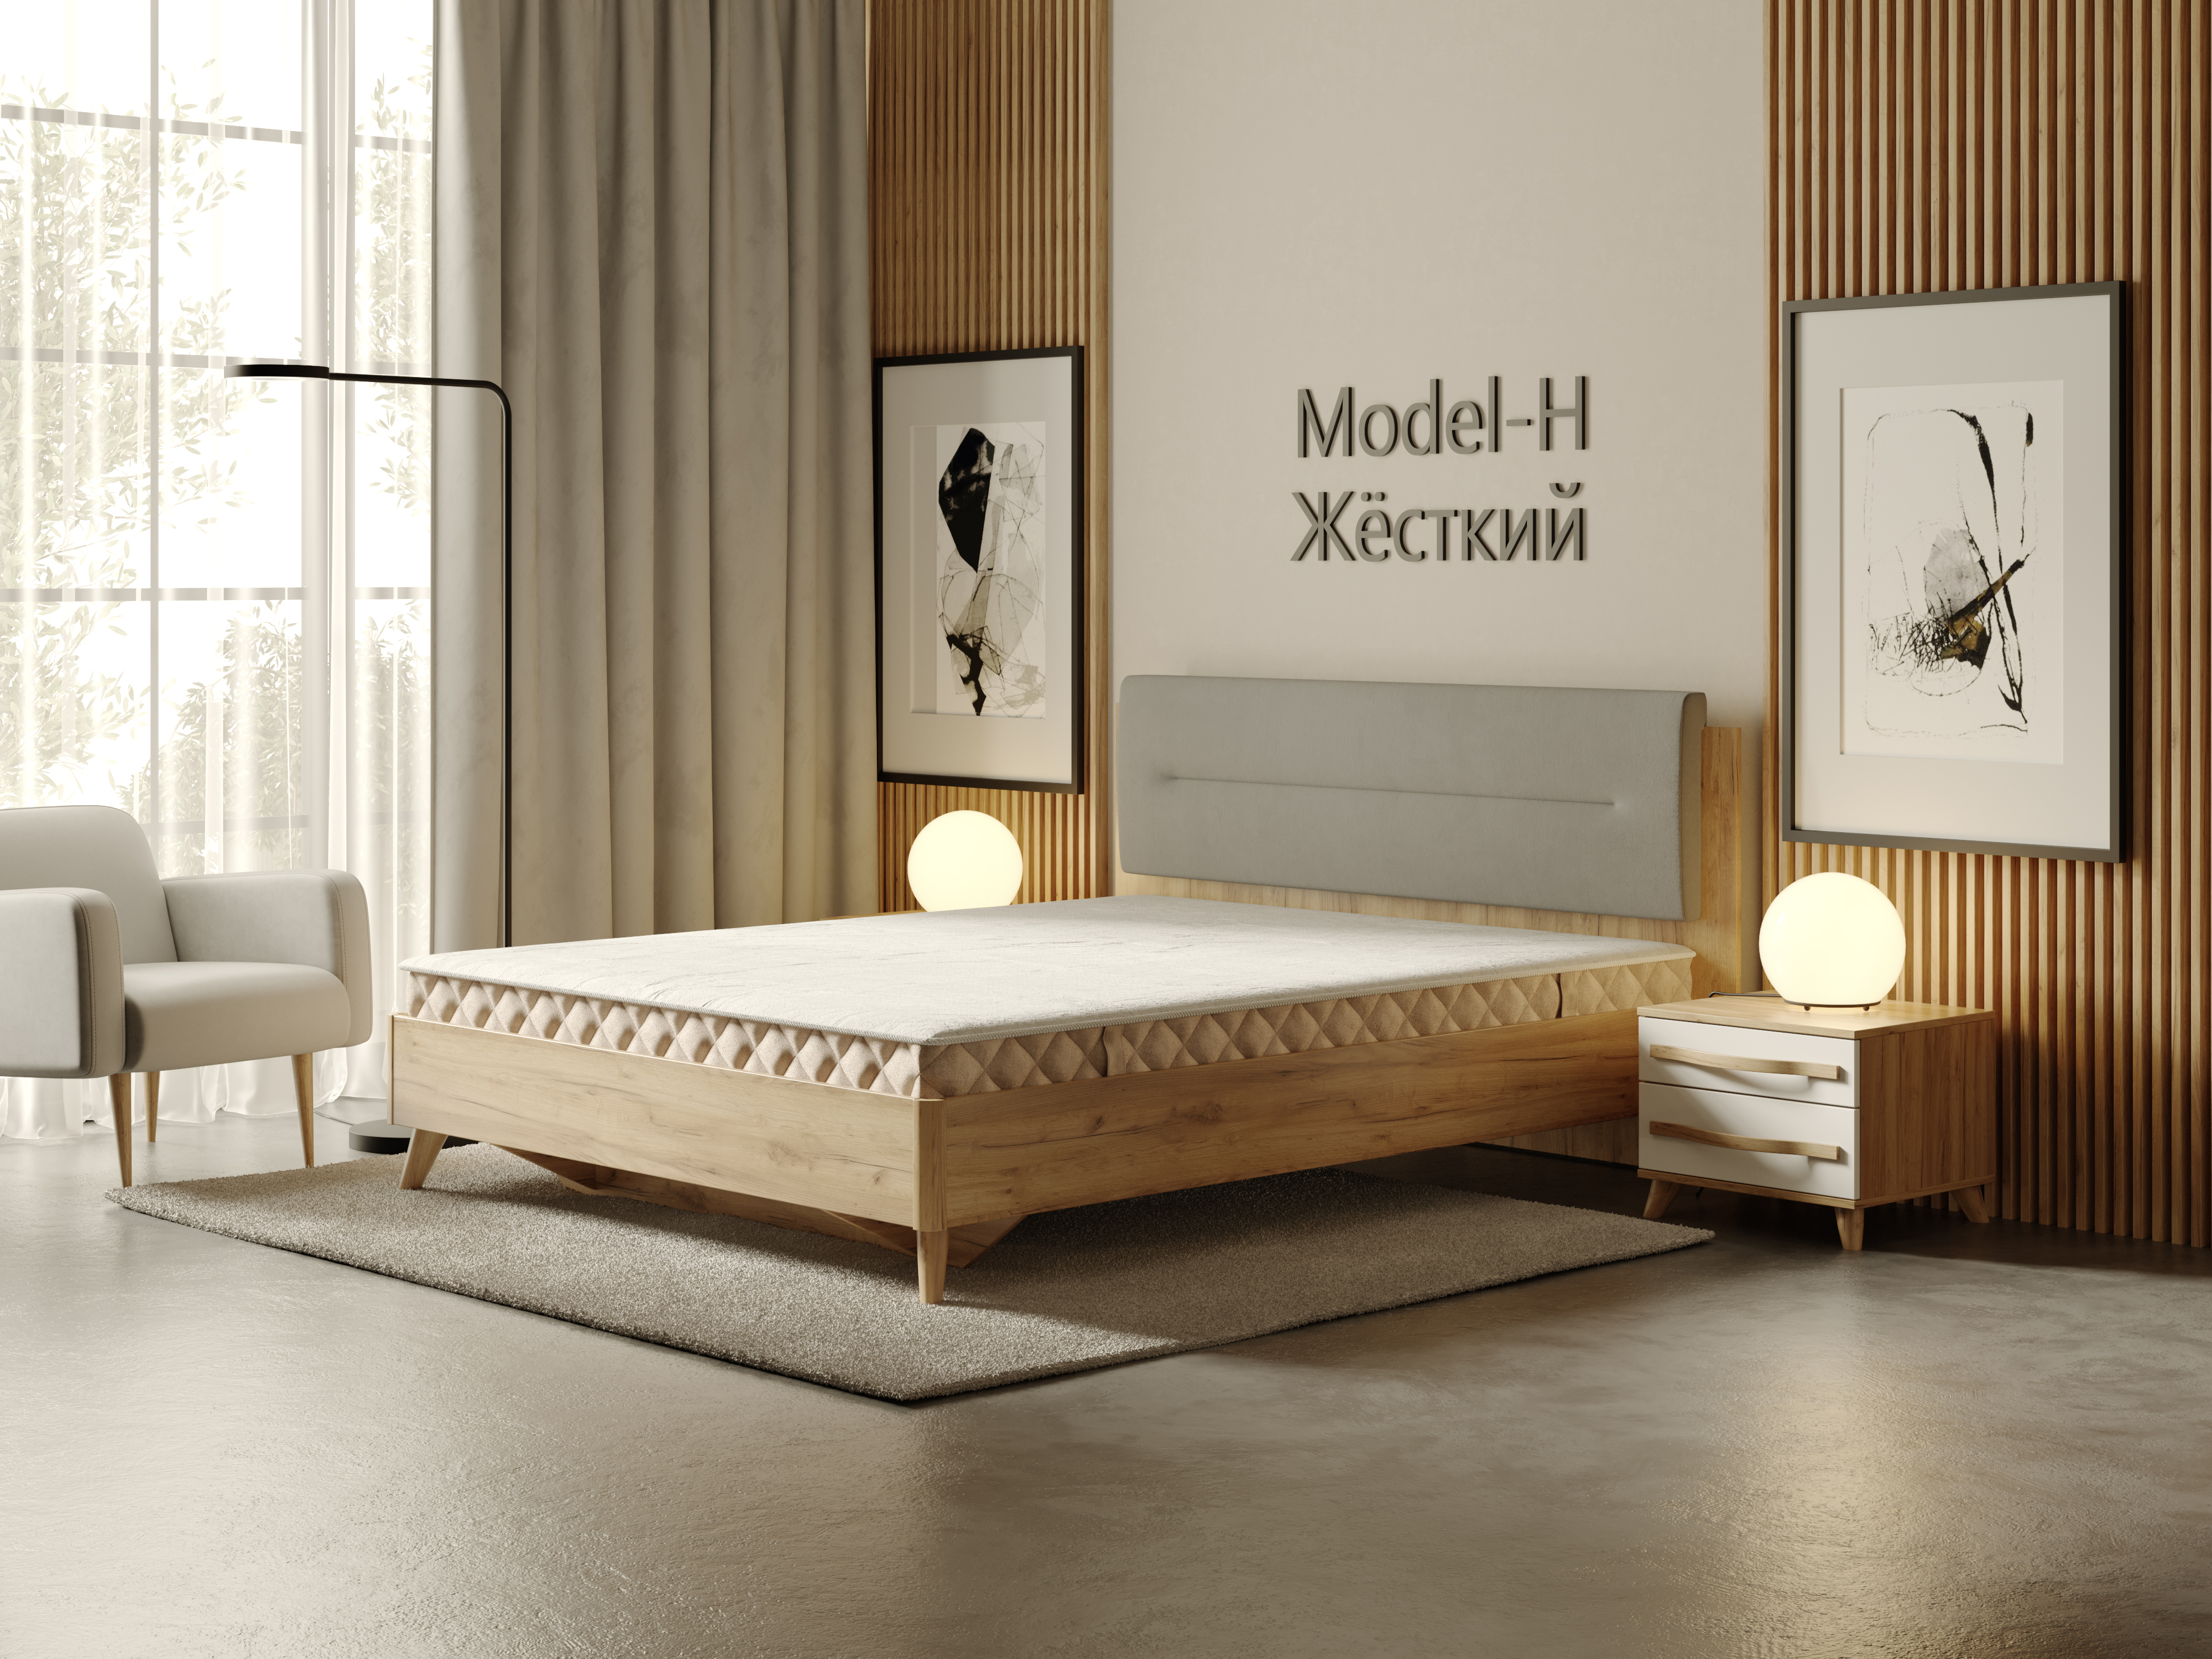 Матрас двуспальный 180х200 Model-H M.107.1820 купить в Москве в интернет-магазине Любимый дом